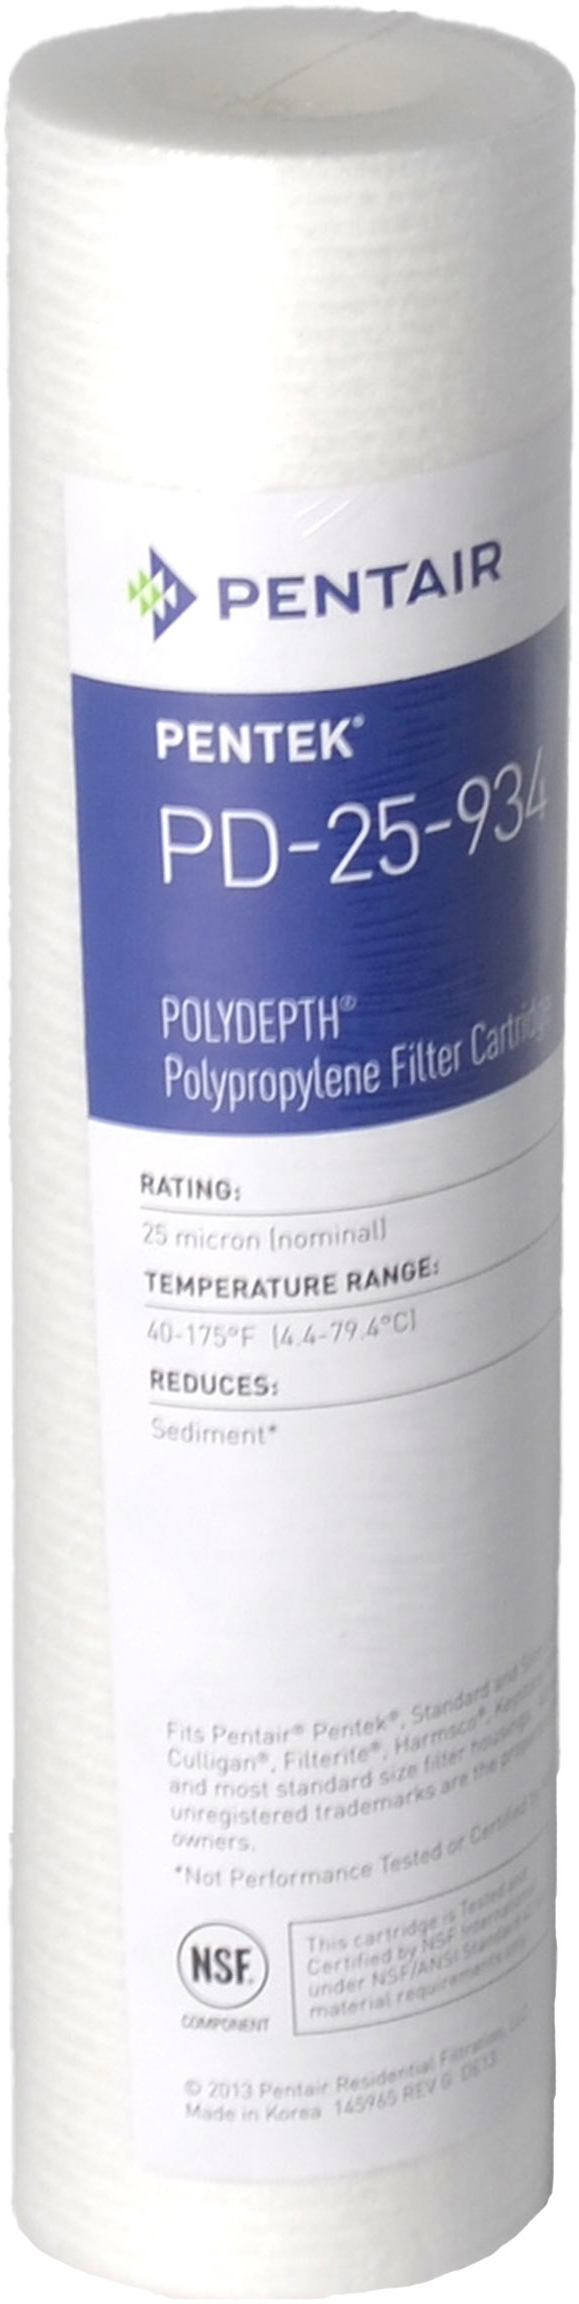 Характеристики картридж для фильтра Pentek PD-25-934 Polydepth (155751-43)